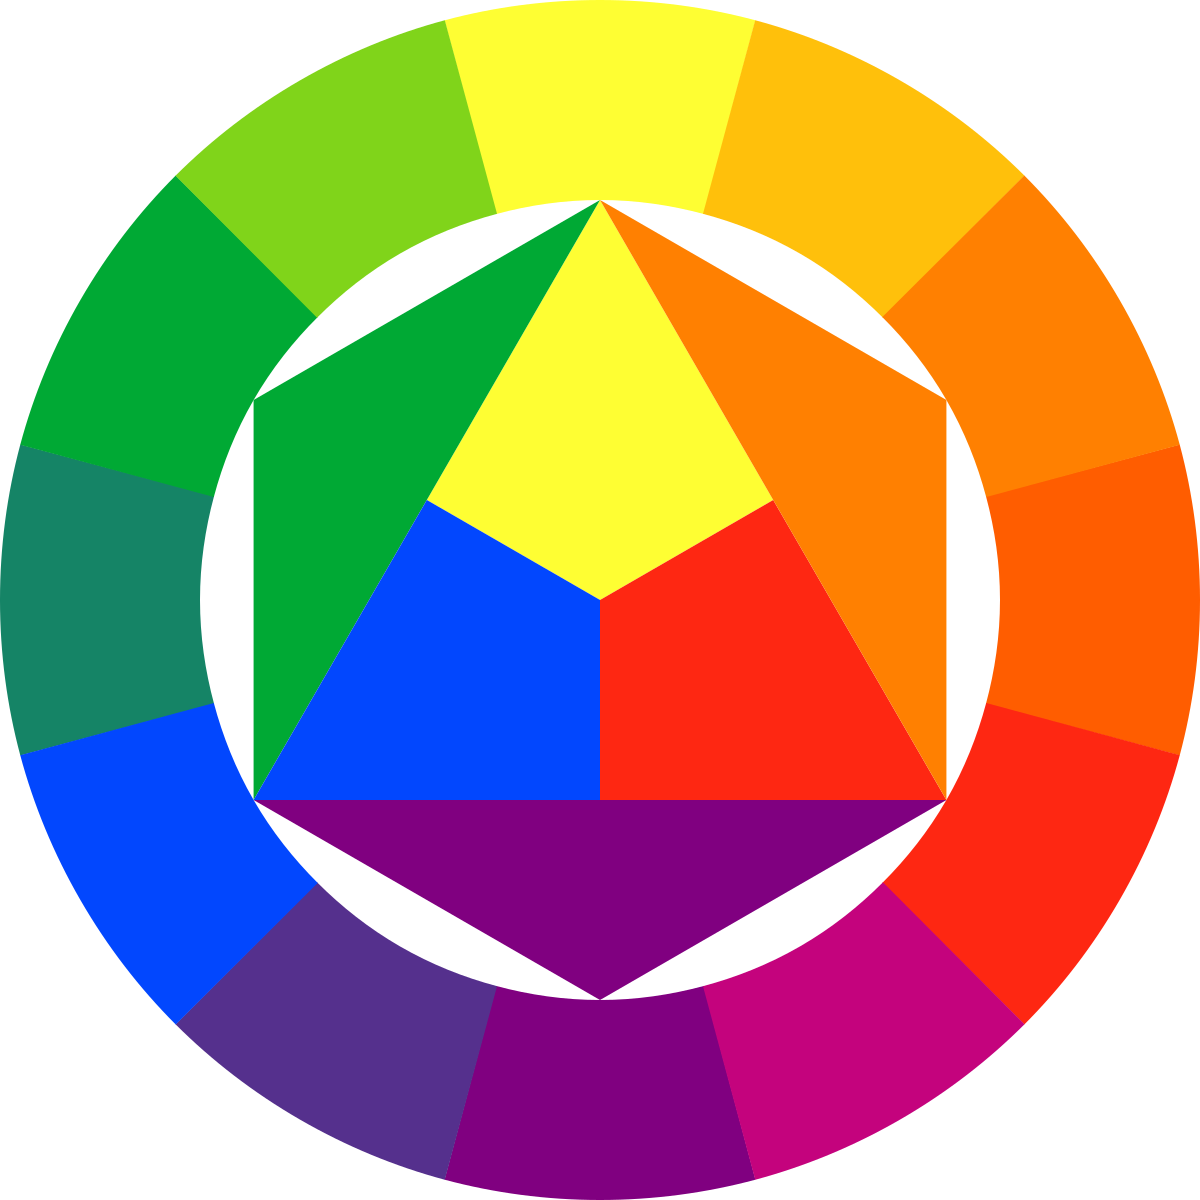 Cerchio cromatico - Wikipedia